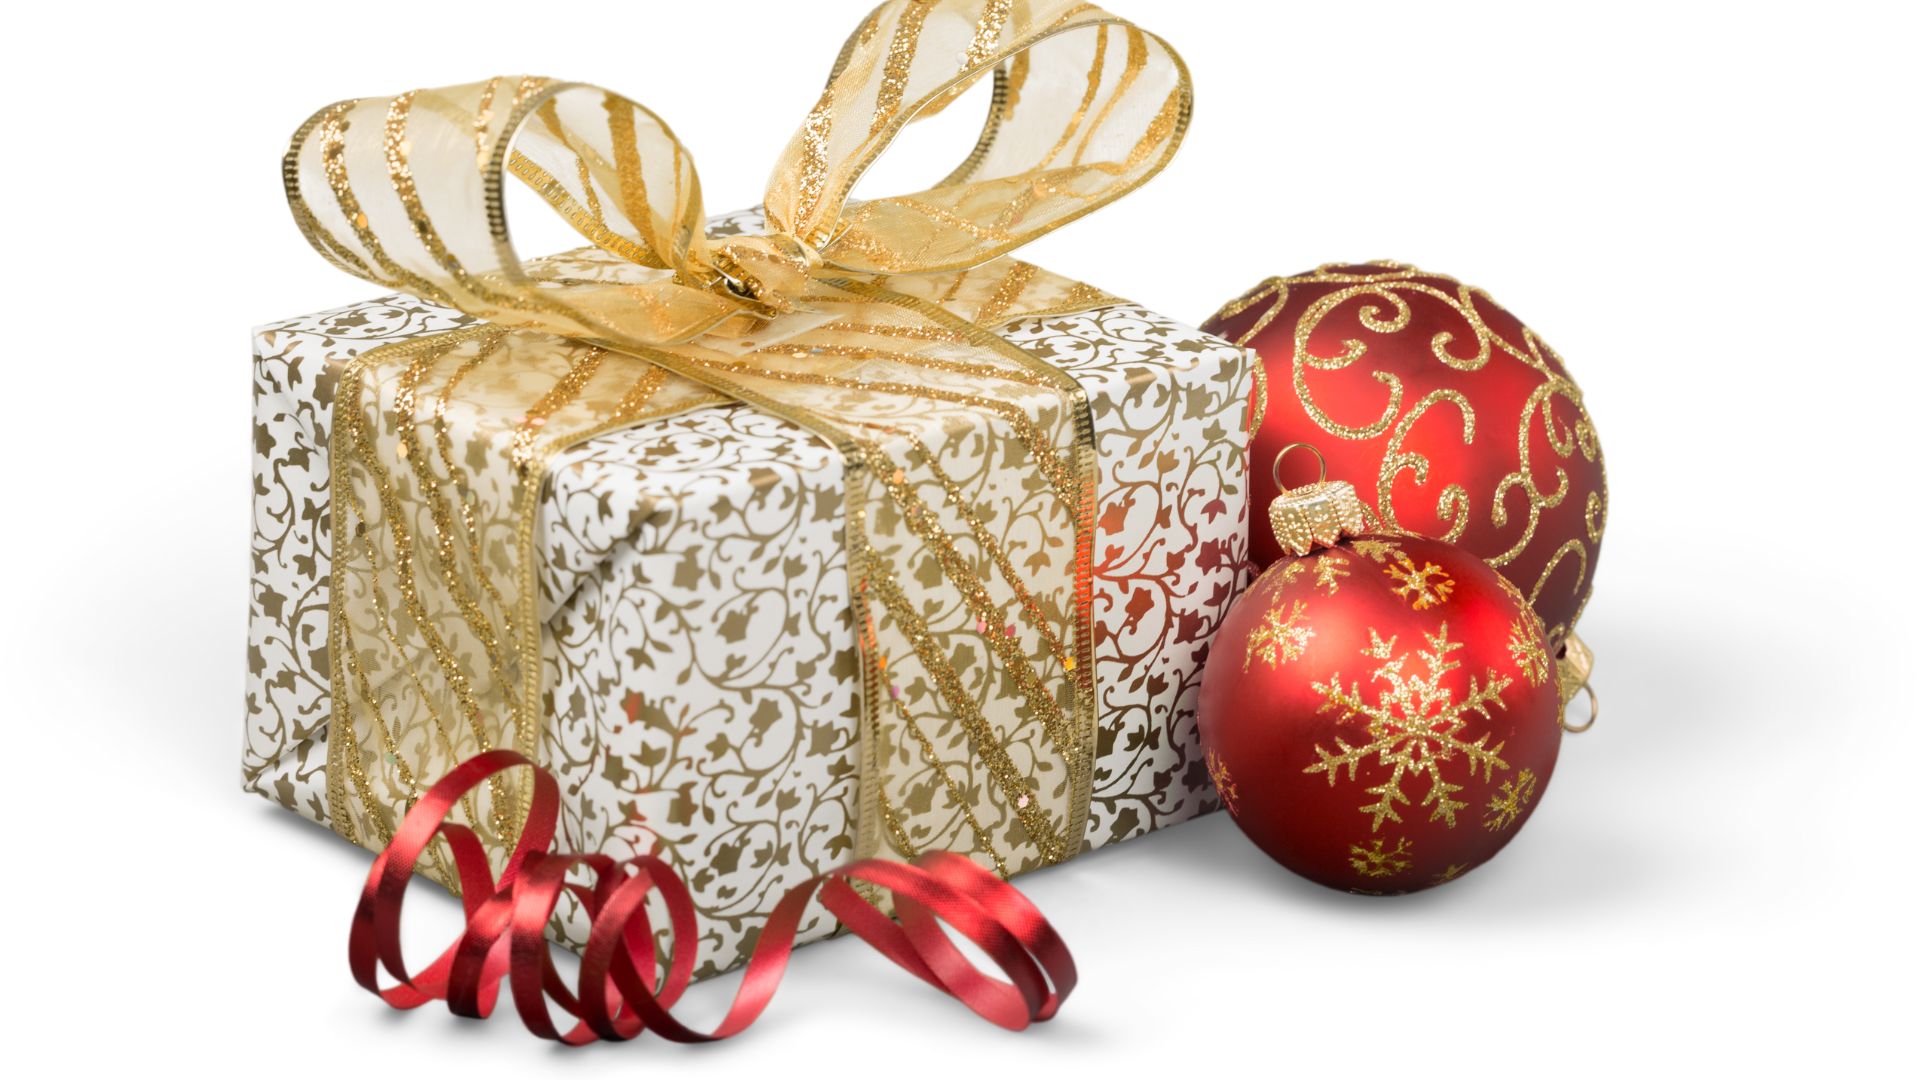 Imagem de fundo branco, à frente uma caixa de presente embrulhada em um papel com desenhos dourados. Um laço de fita dourado está envolto da caixa e ao lado duas bolas de Natal nas cores vermelho e dourado.